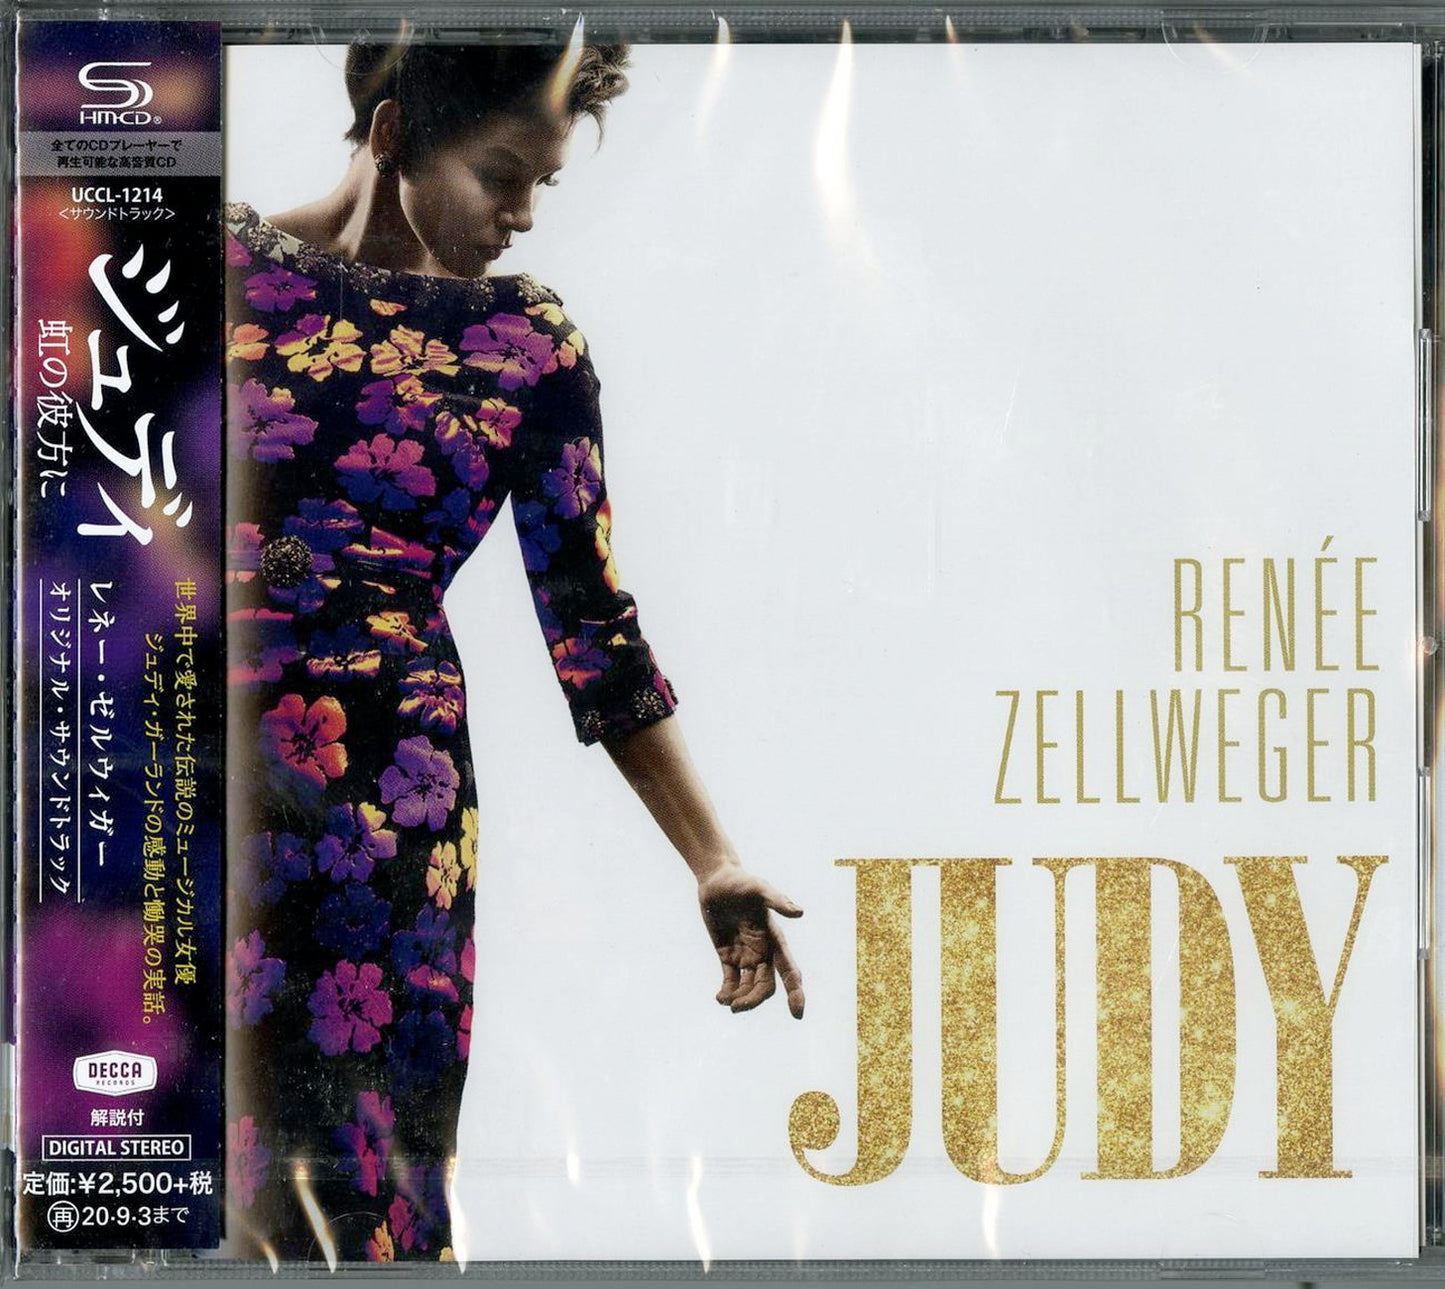 Renee Zellweger - Judy - Japan  SHM-CD